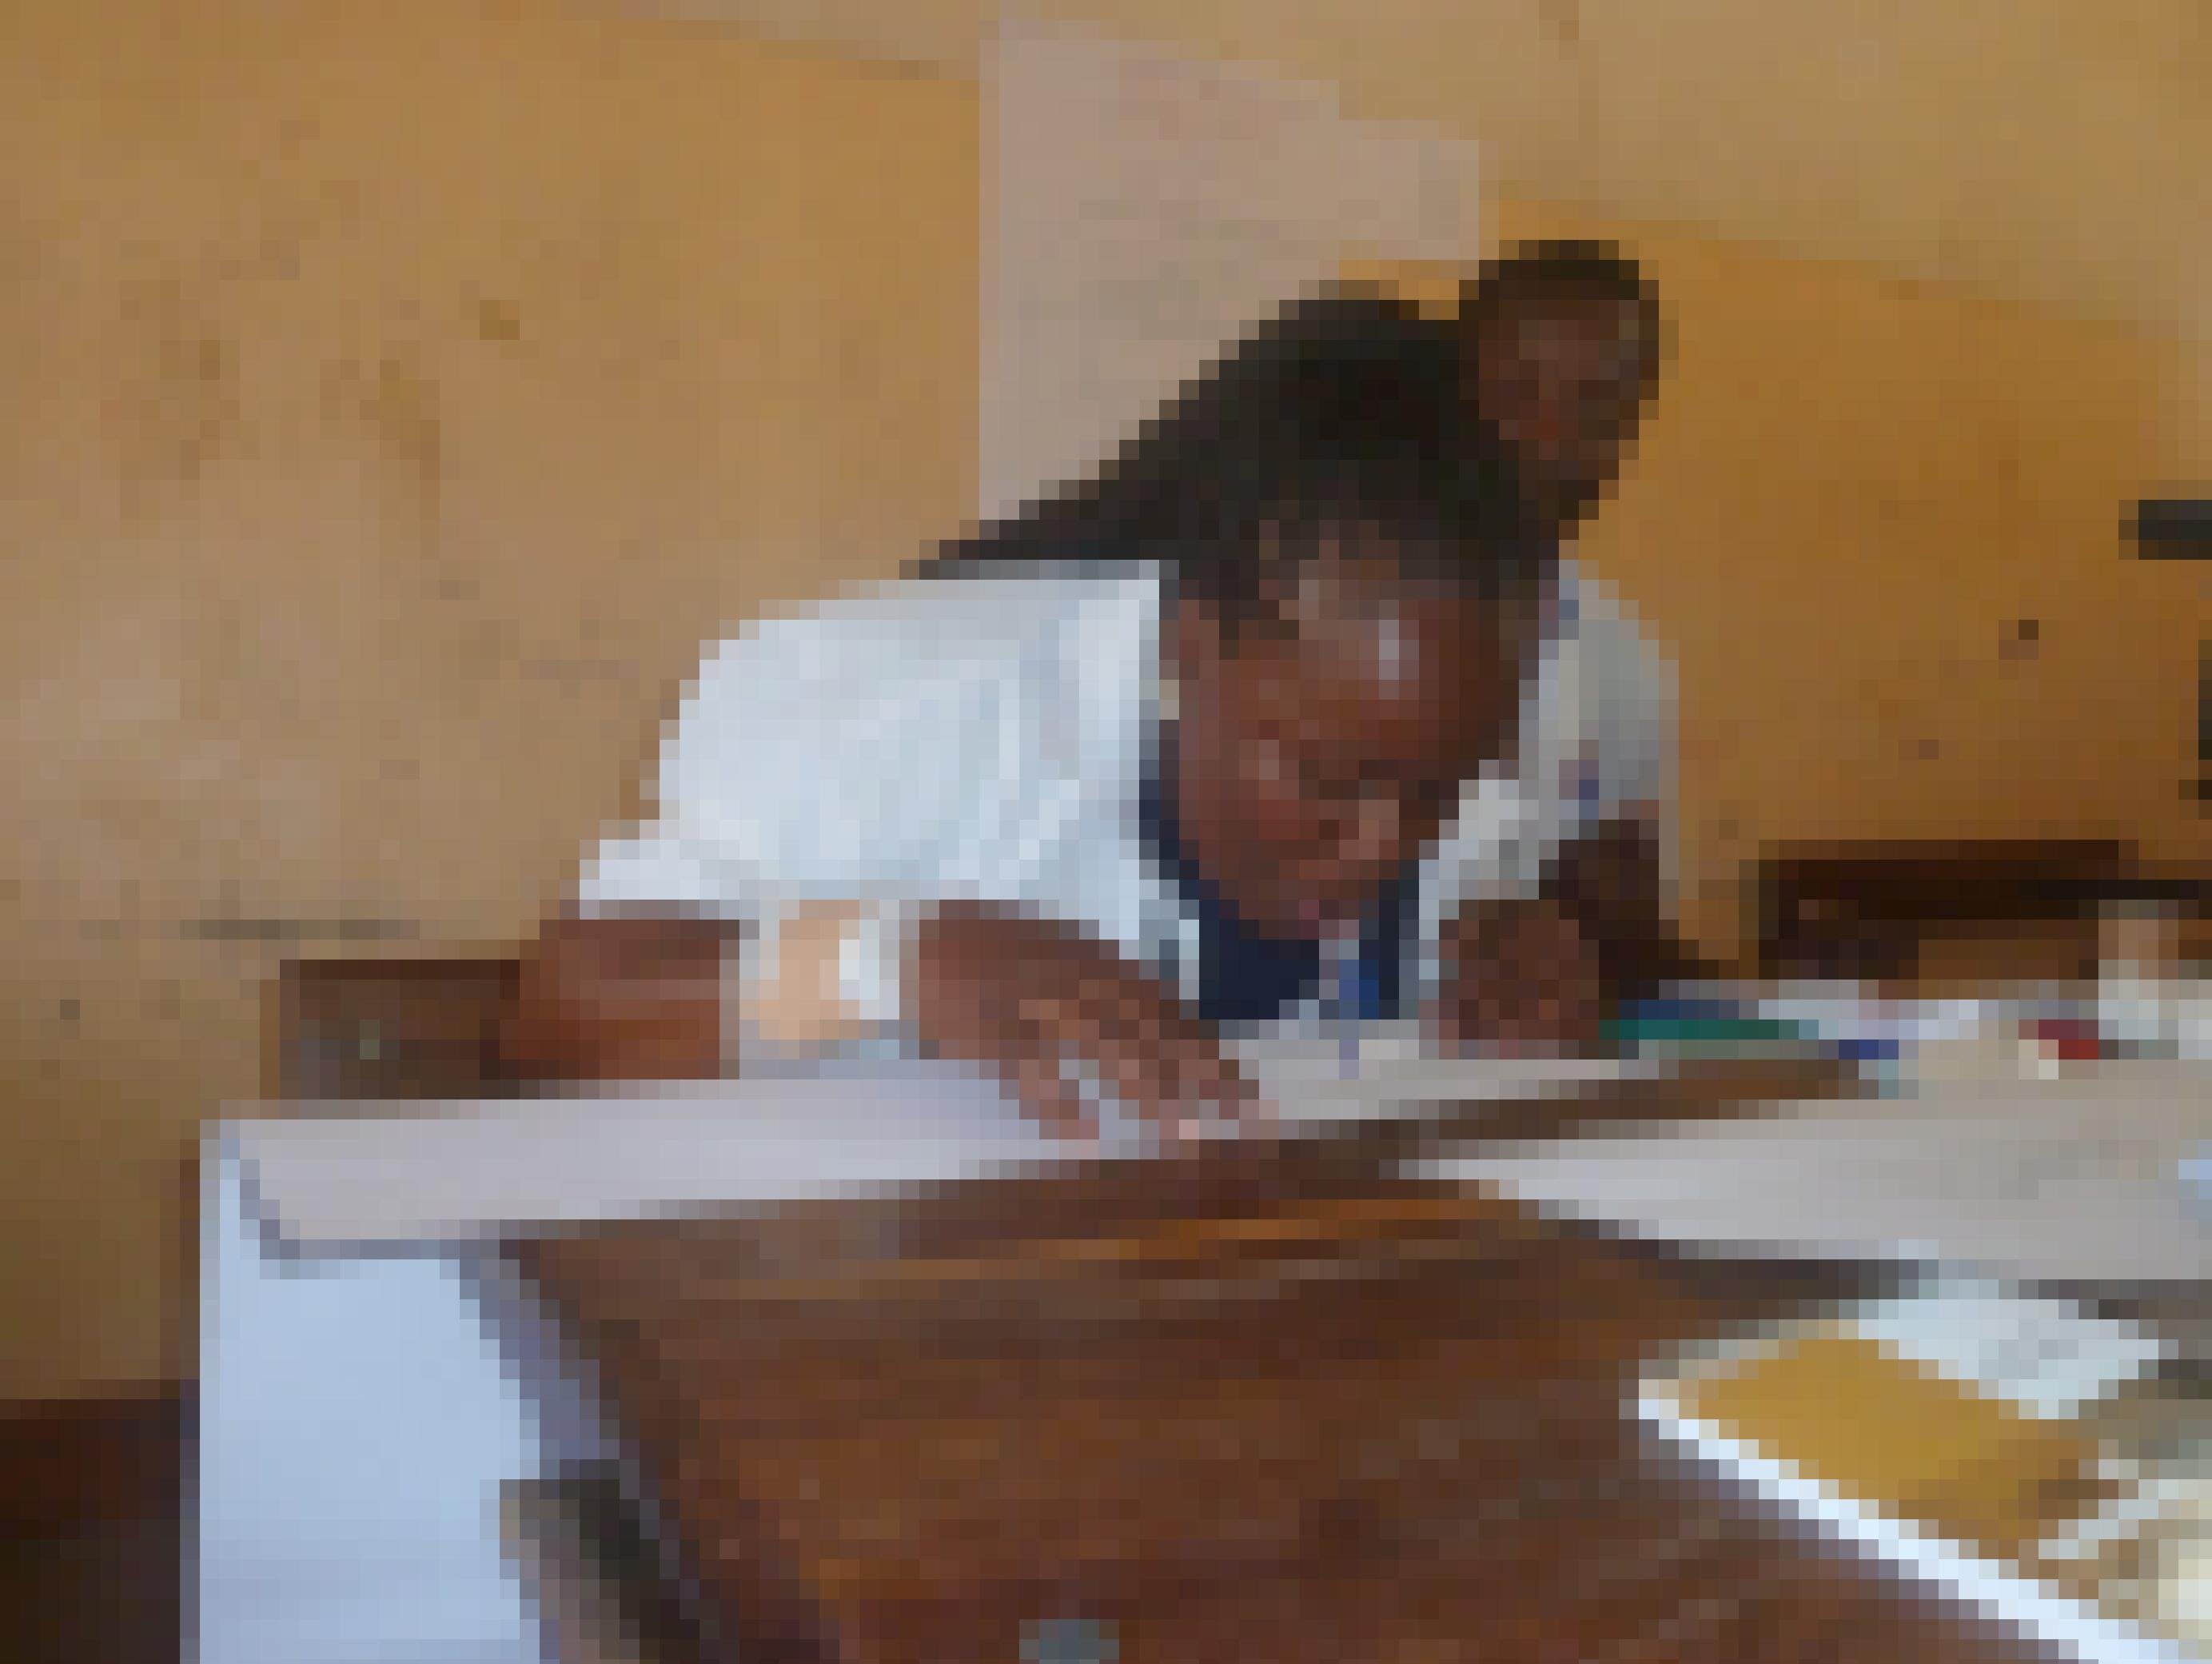 Die Lehrerin hat ihre Arme hochgebunden und einen Stift im Mund. Sie soll schreiben, ohne ihre Hände zu benutzen, um sich in die Lage von Schülern mit Behinderungen zu versetzen